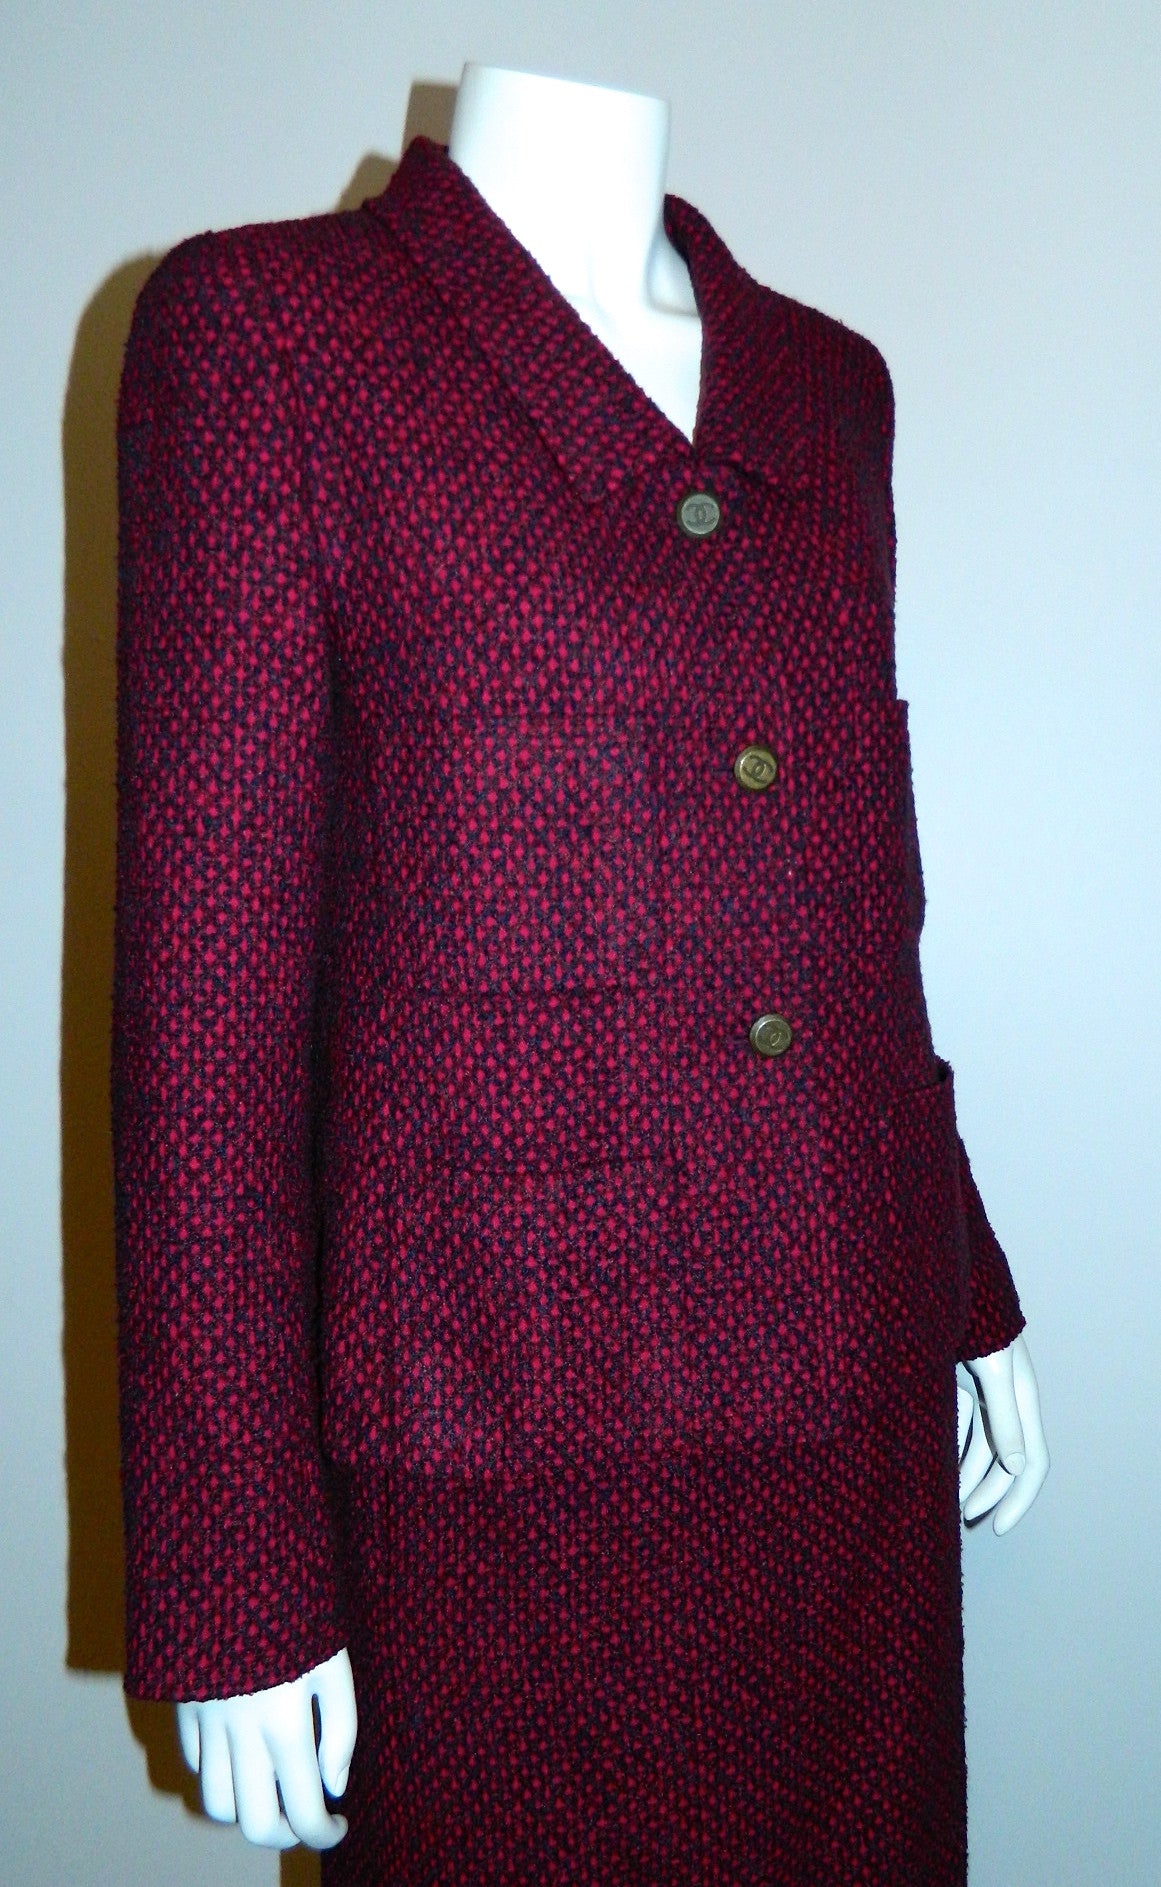 Chanel vintage tweed suit - Gem